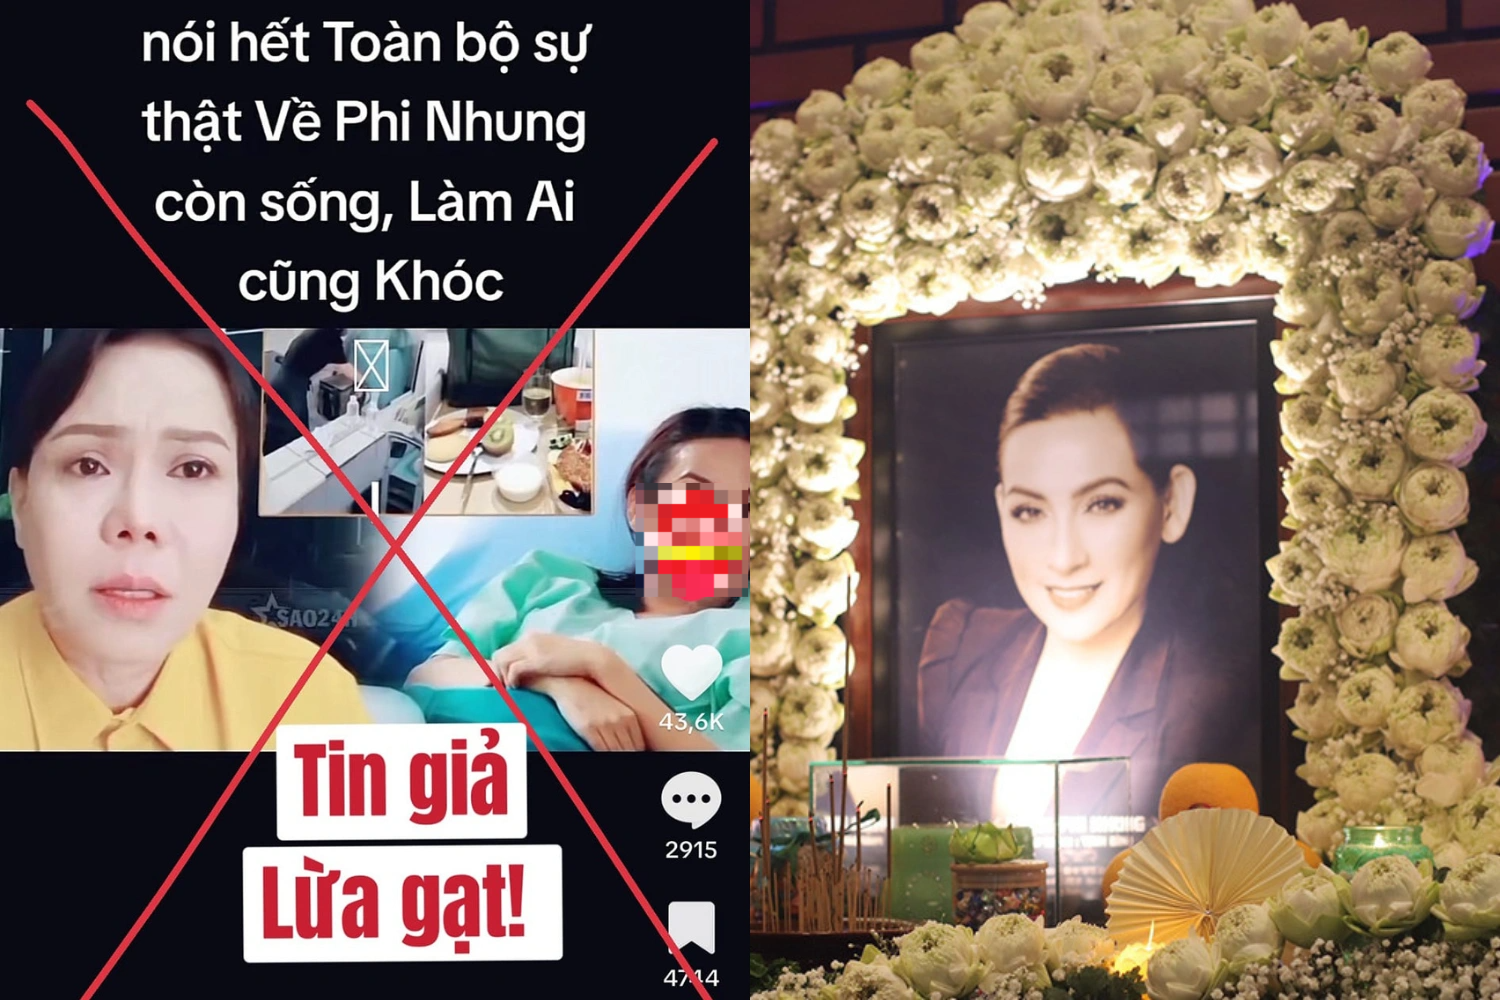 Việt Hương bức xúc khi cố nghệ sĩ Phi Nhung bị tung tin giả dù đã mất 2 năm - 2